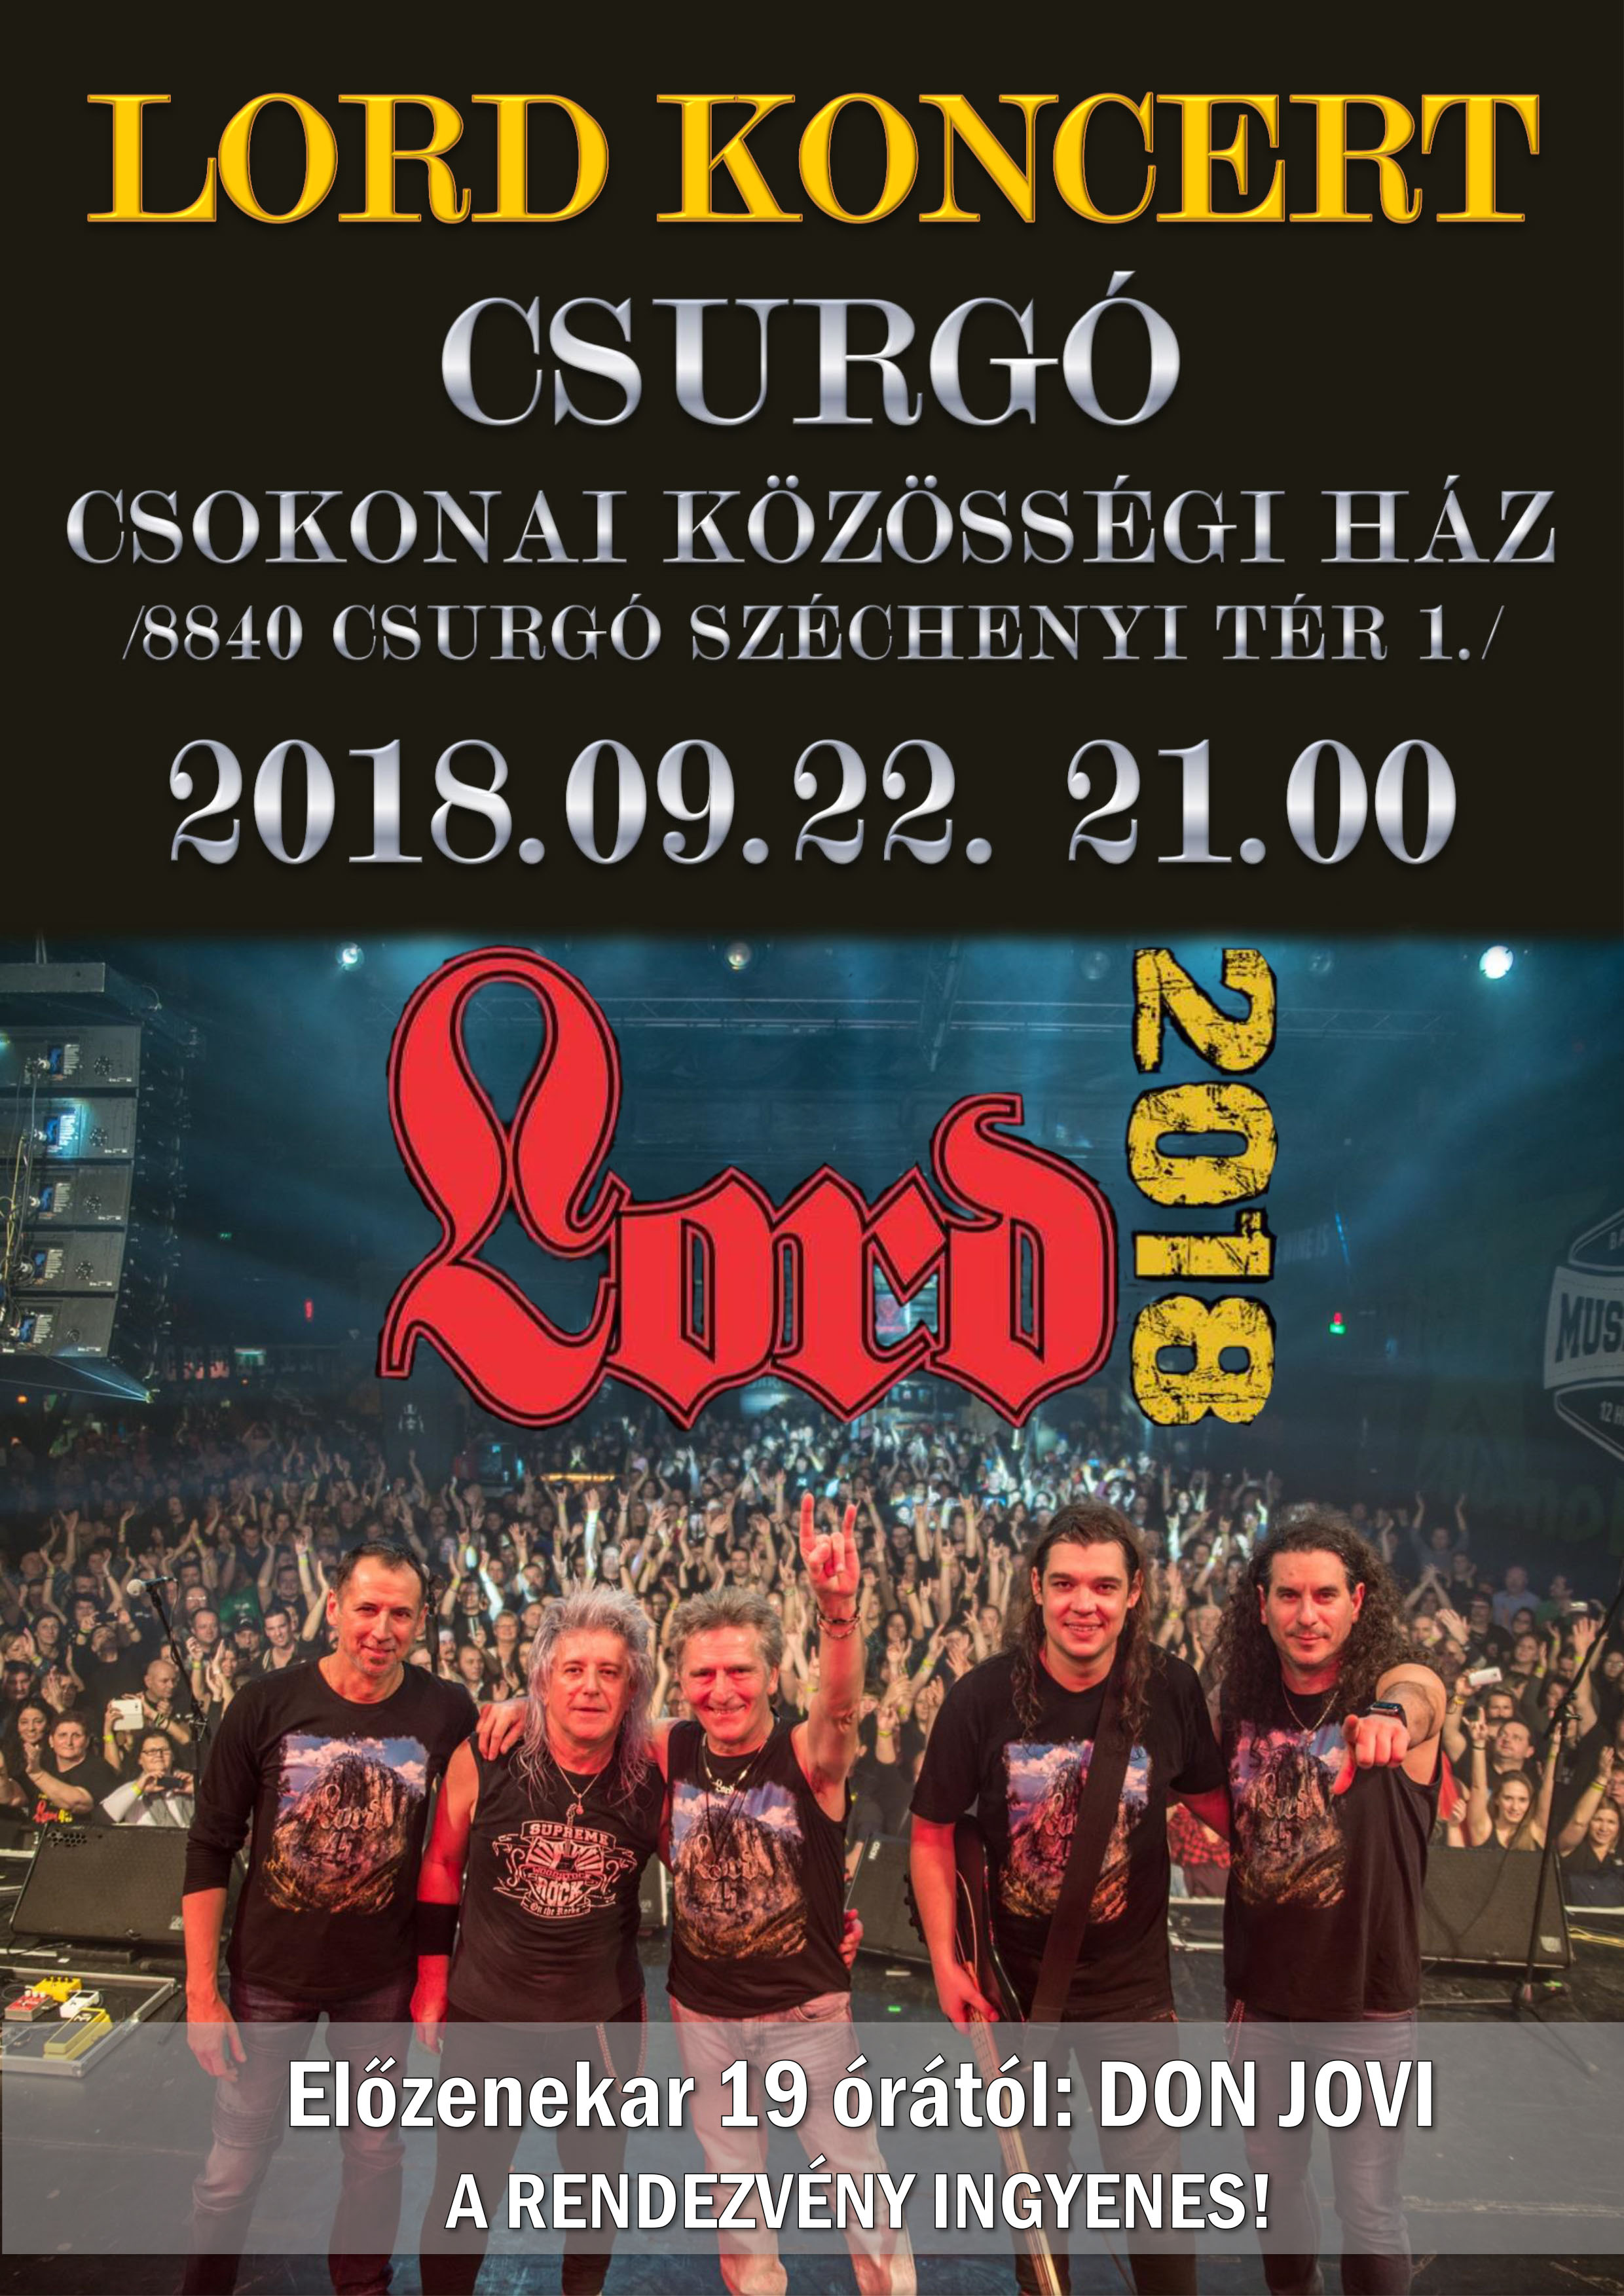 LORD Koncert Csurgó2018 Plakát 